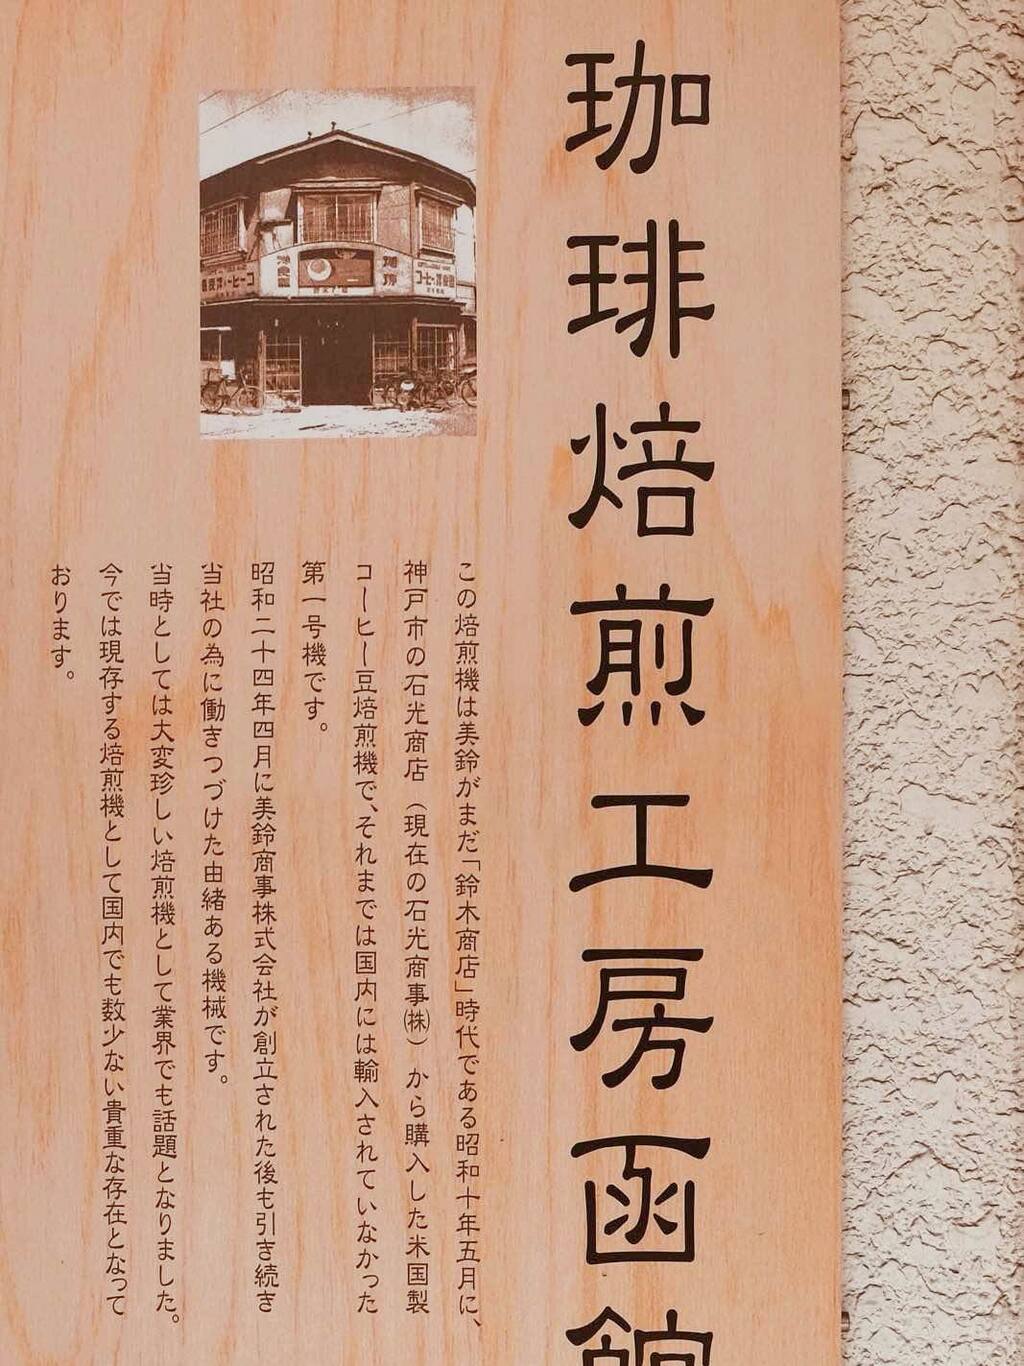 历史悠久的老牌咖啡商 美玲咖啡 东京旅游攻略 尽在airbnb爱彼迎